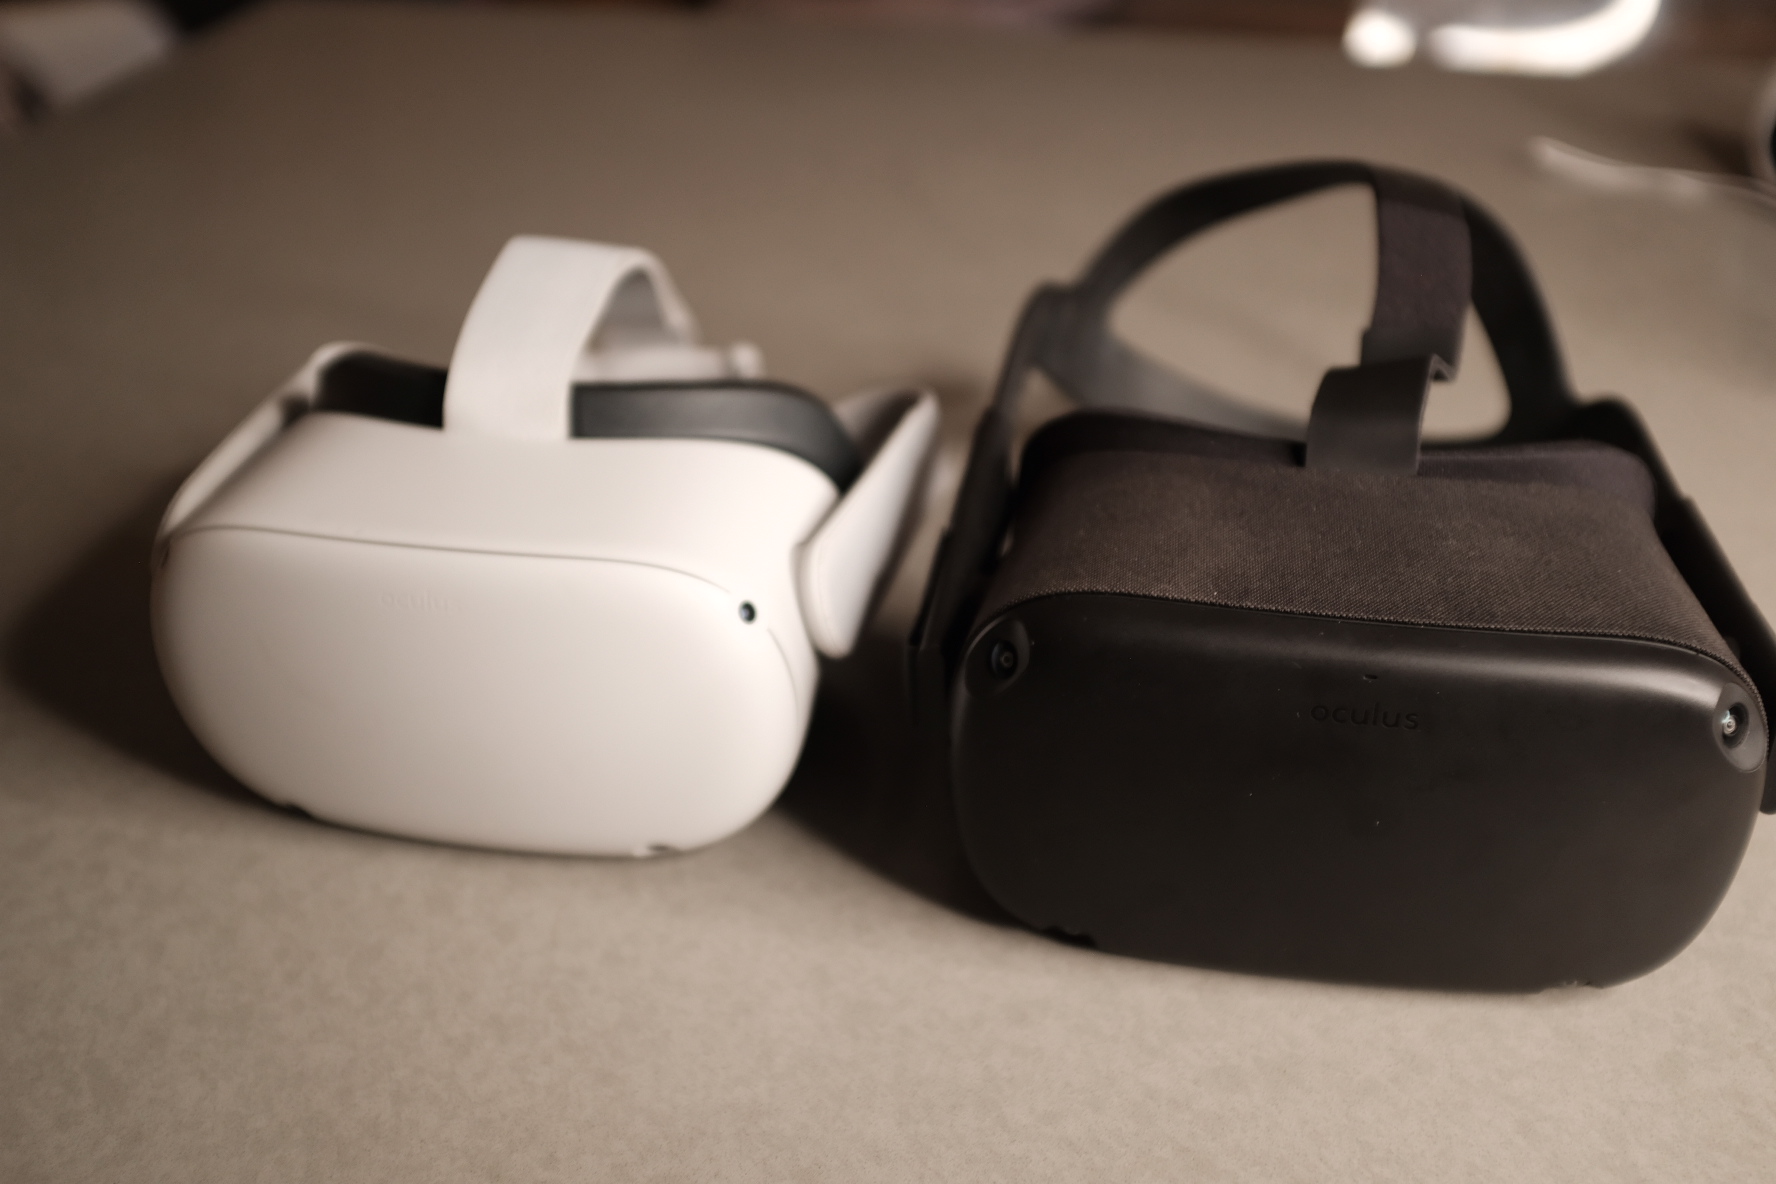 Review: Facebook's Oculus Quest 2 is outstanding | TechCrunch